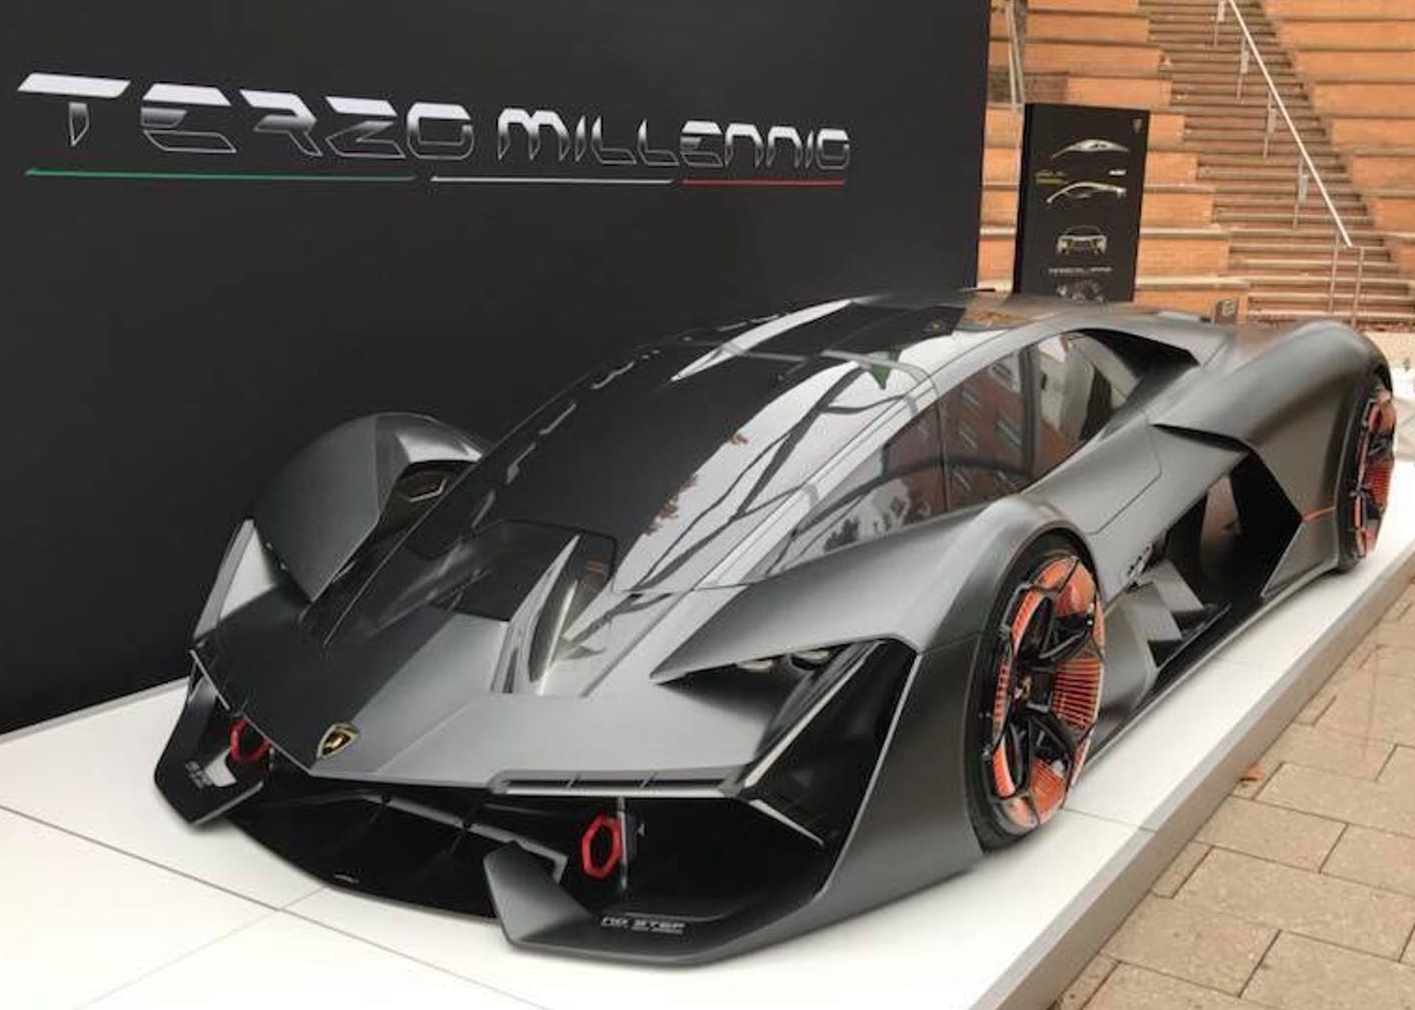 The Future of Lamborghini: The Lamborghini Terzo Millennio - The Supreme Car  Initiative